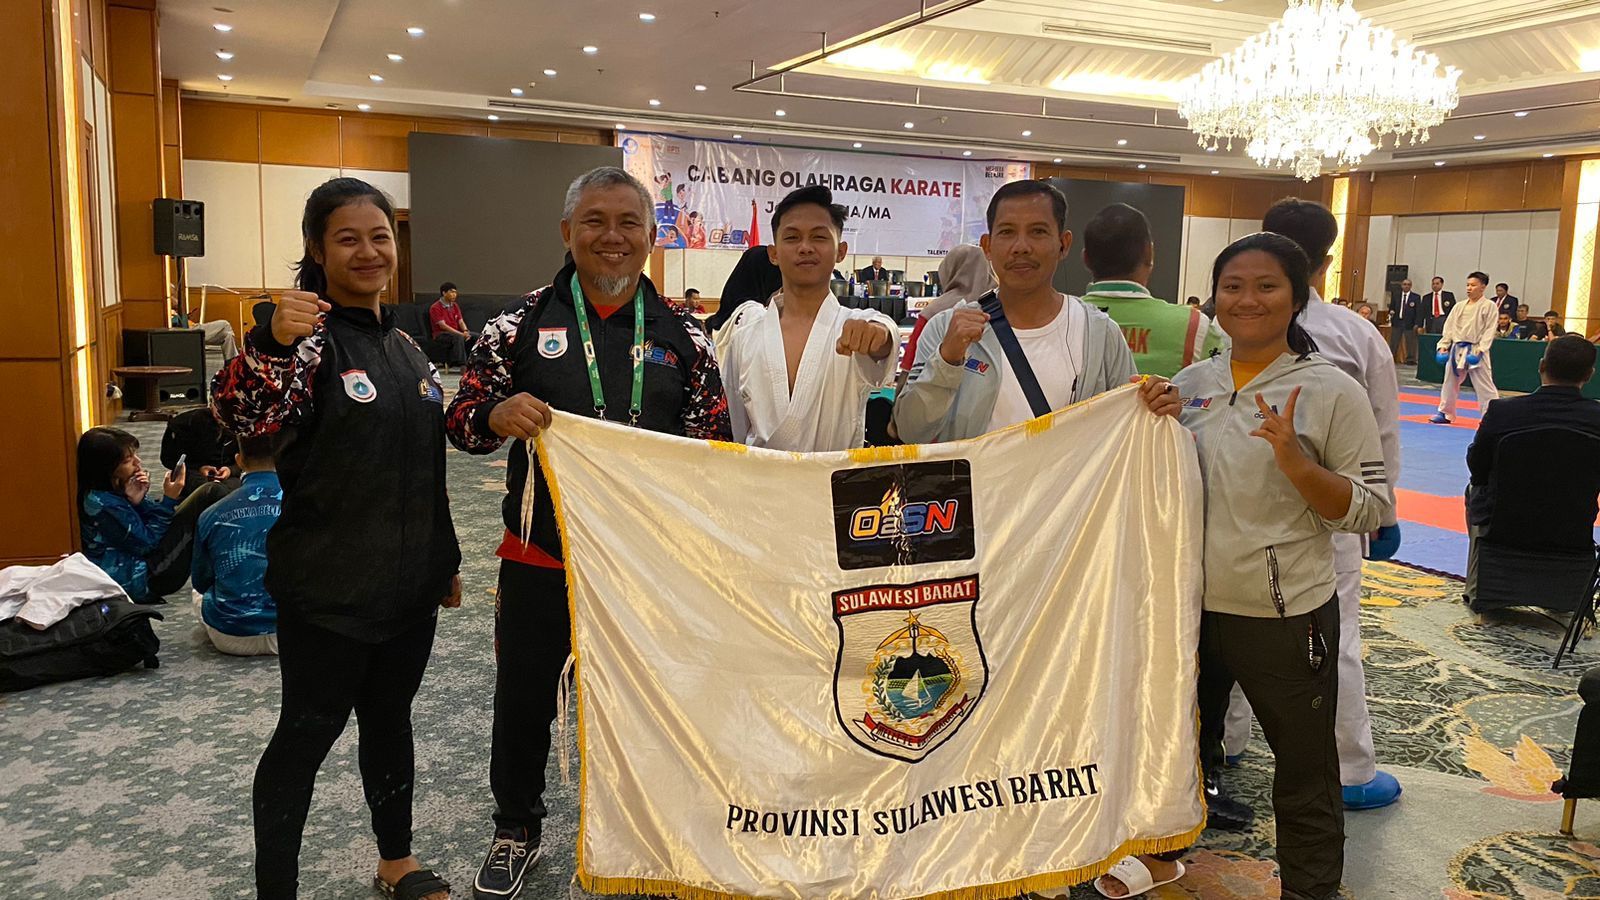 Muhammad Rusnadi Pratama Siswa Kelas II SMU Negeri 1 Polewali Mandar Juara Tiga Karate Tingkat Nasional, Harumkan Nama Sekolah dan Sulawesi Barat